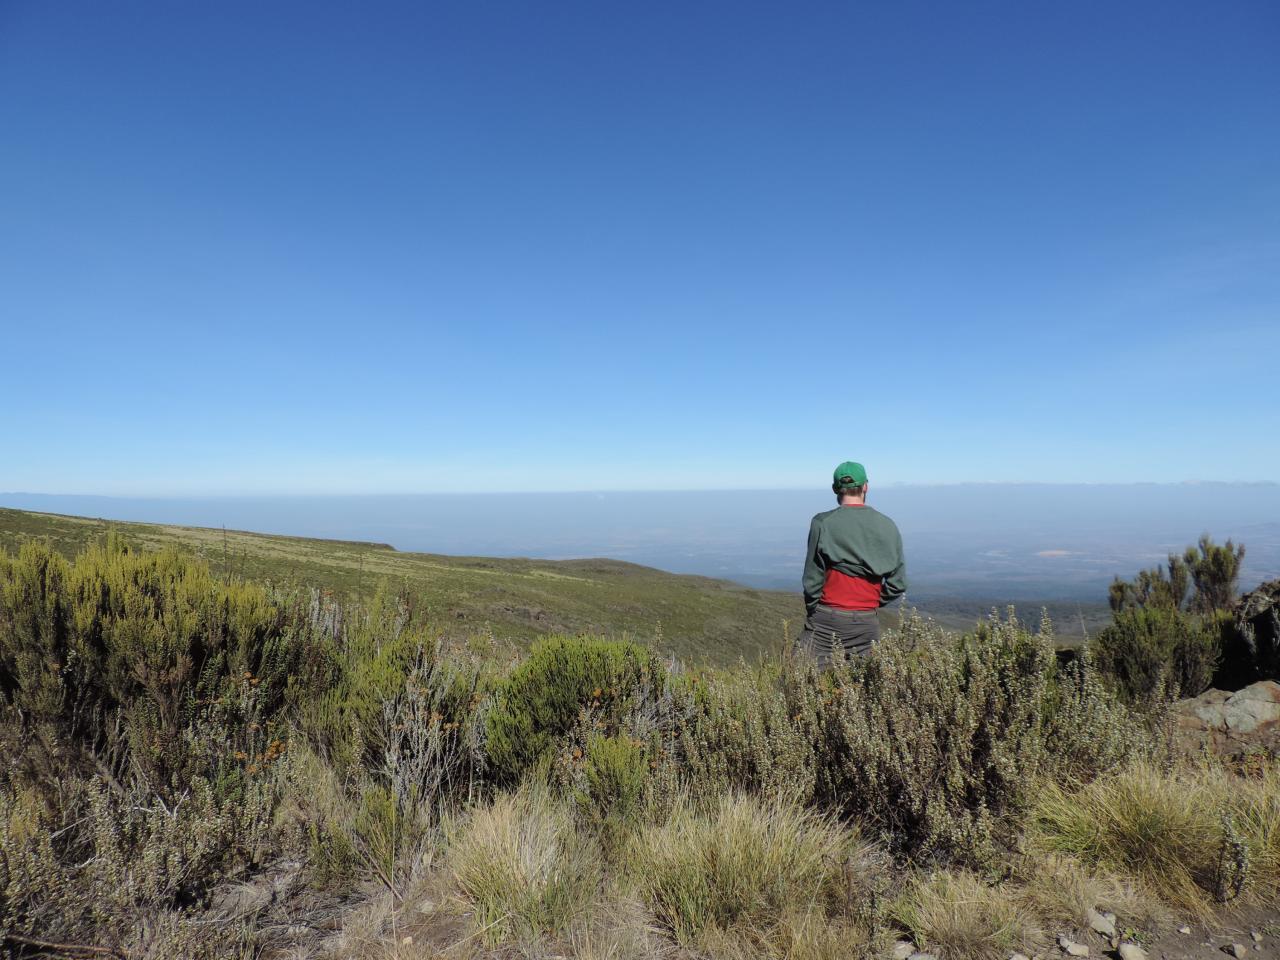 Kenya Mountain Climbing Adventures/YHA Kenya Travel Tours/Trekking Mount Kenya.